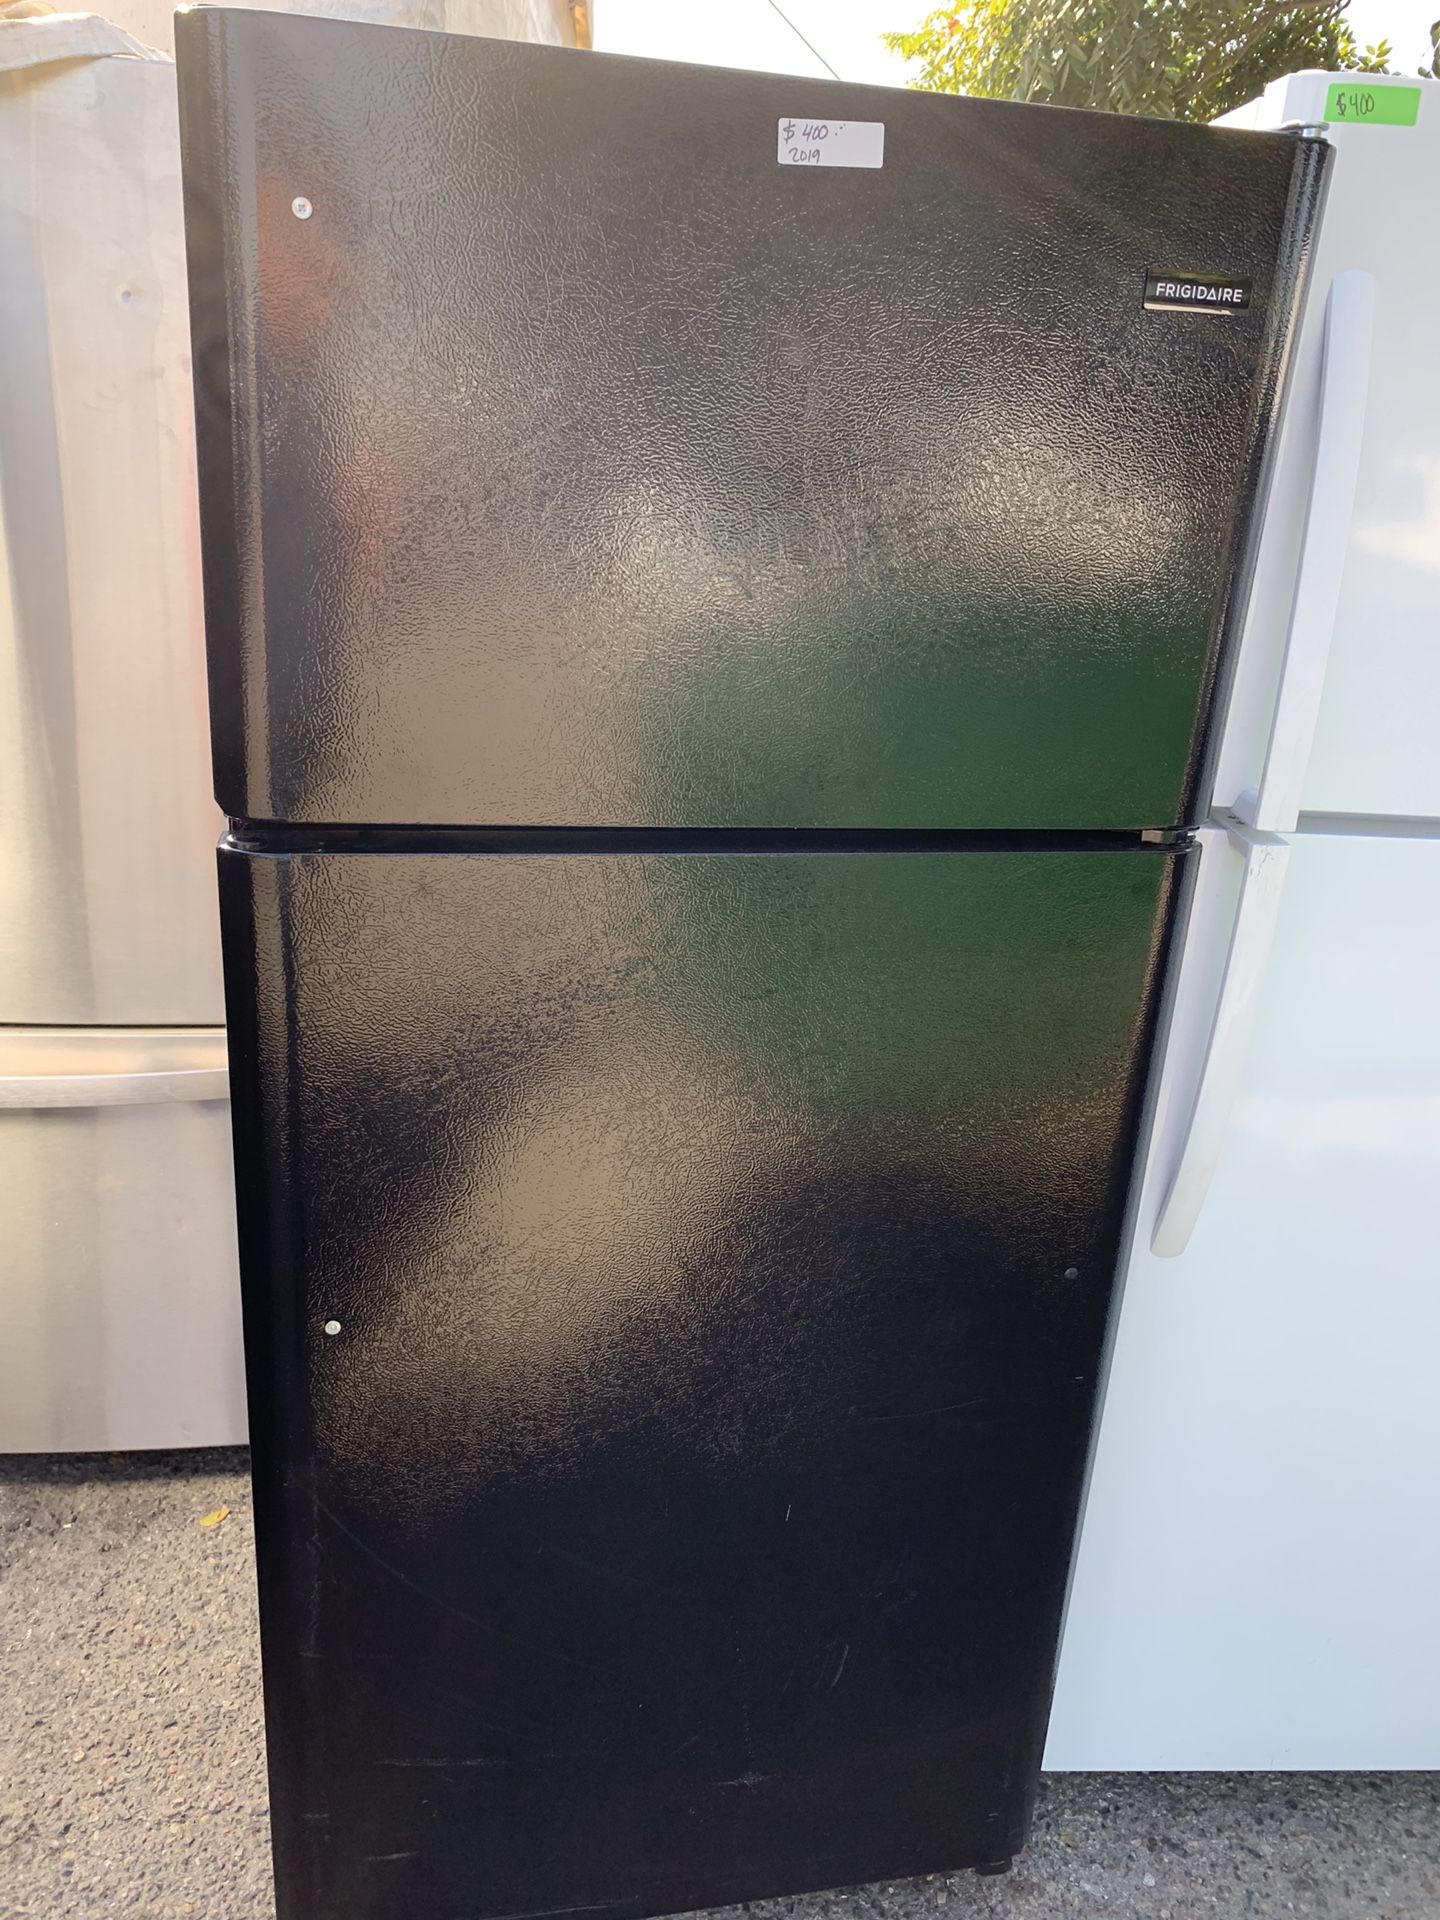 Frigidaire black top freezer refrigerator